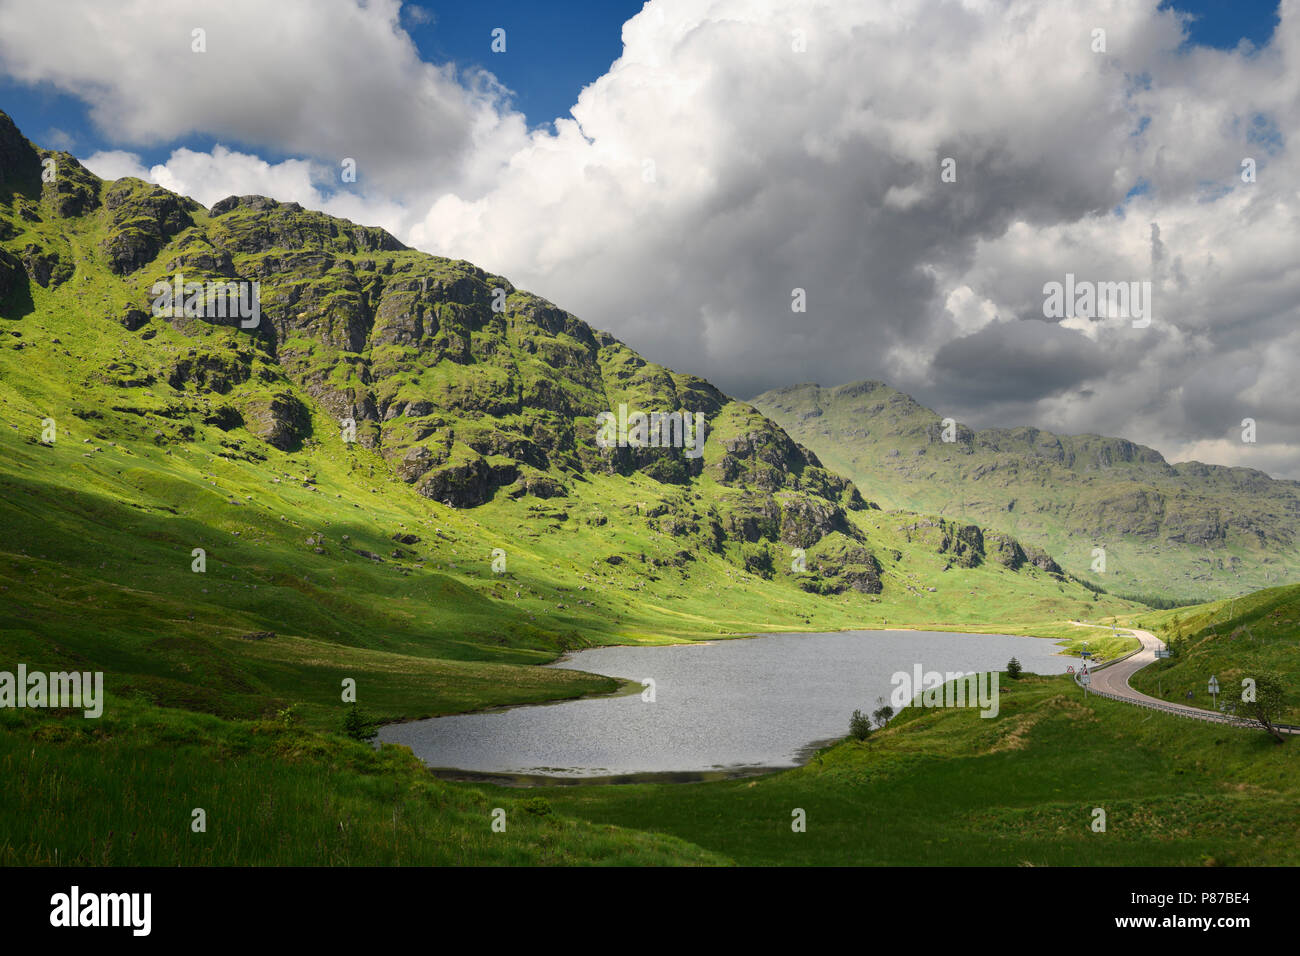 Beinn eine Lochain und Binnein eine Fhidhleir Berge der Arrochar Alps in Sonne mit Loch Restil in Ruhe und dankbar Gedenkstein Schottland Stockfoto